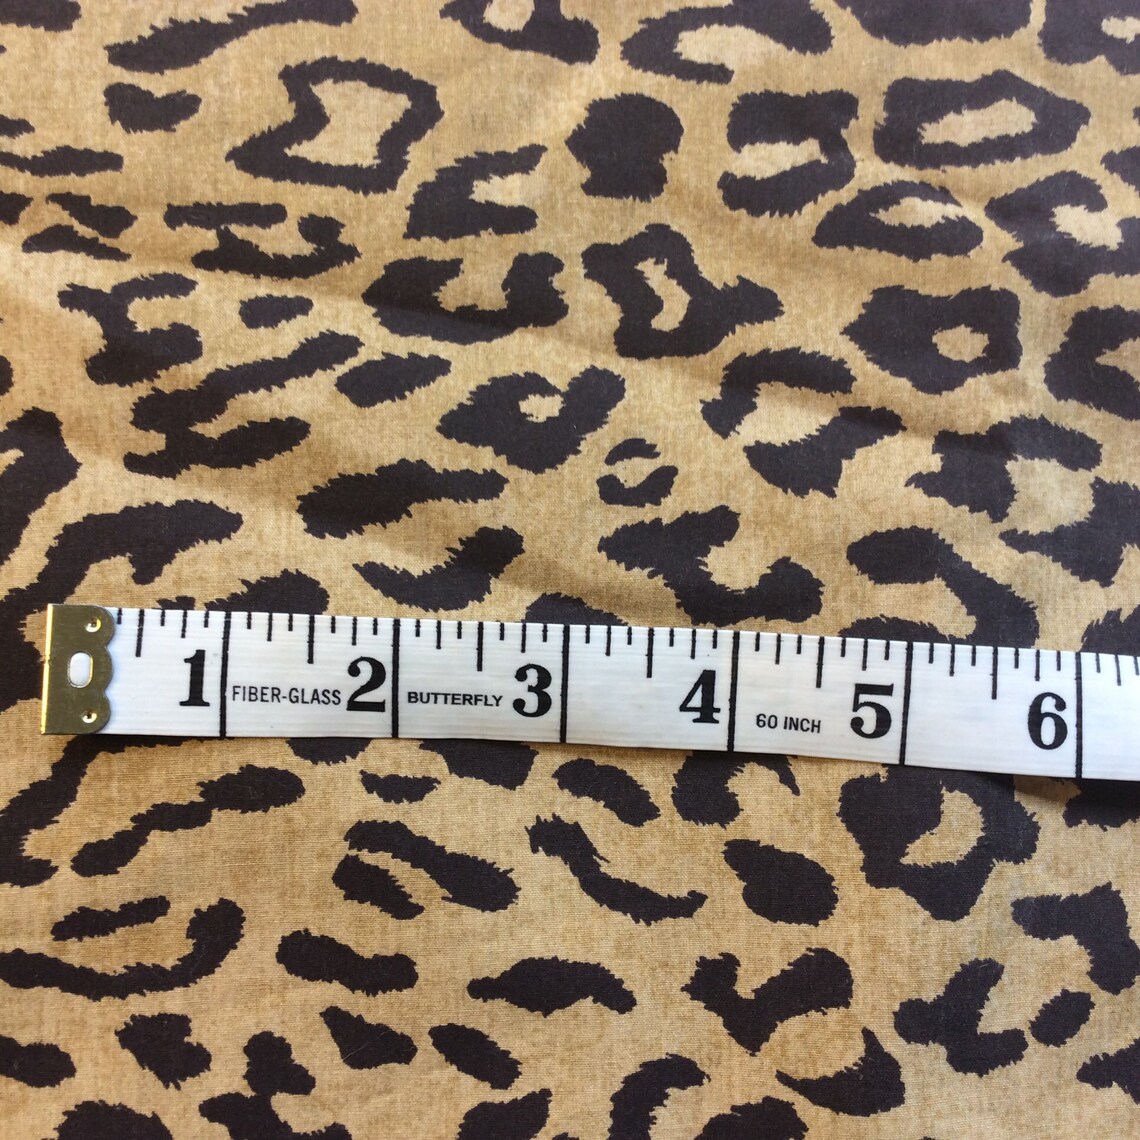 Sheet Twin Flat Ralph Lauren Leopard Print 100% Cotton | Etsy